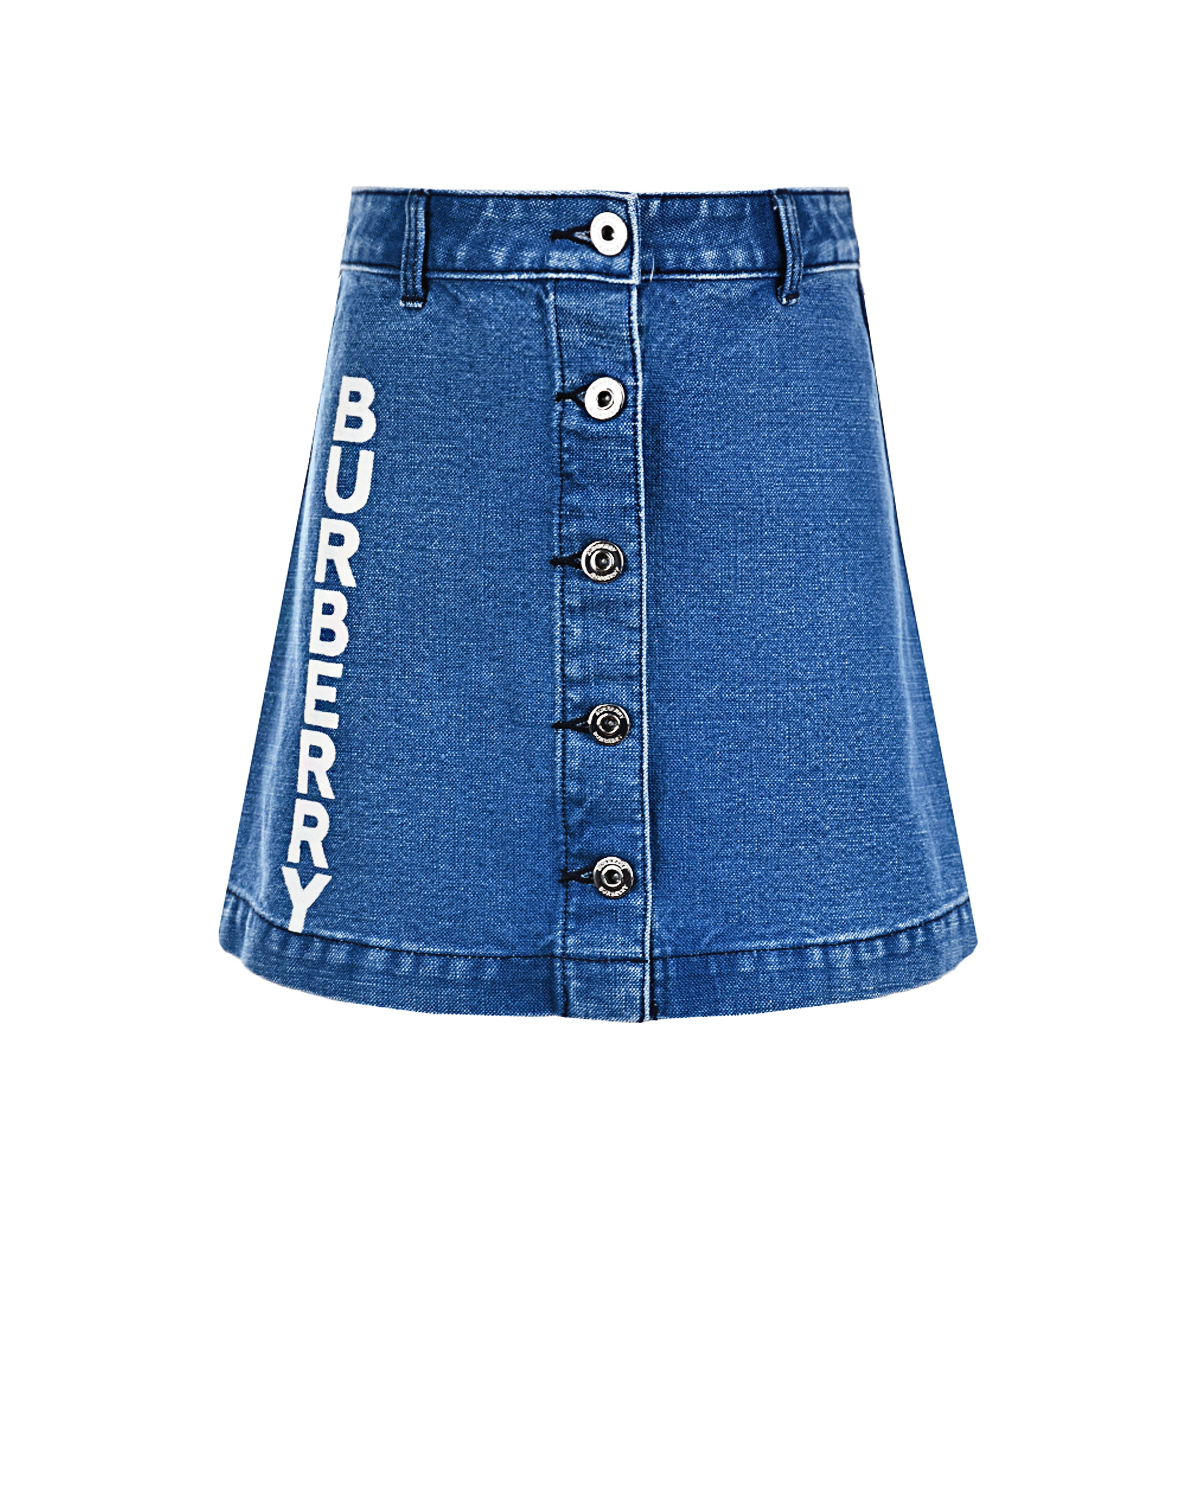 Джинсовая юбка с логотипом Burberry детская, размер 116, цвет синий - фото 1